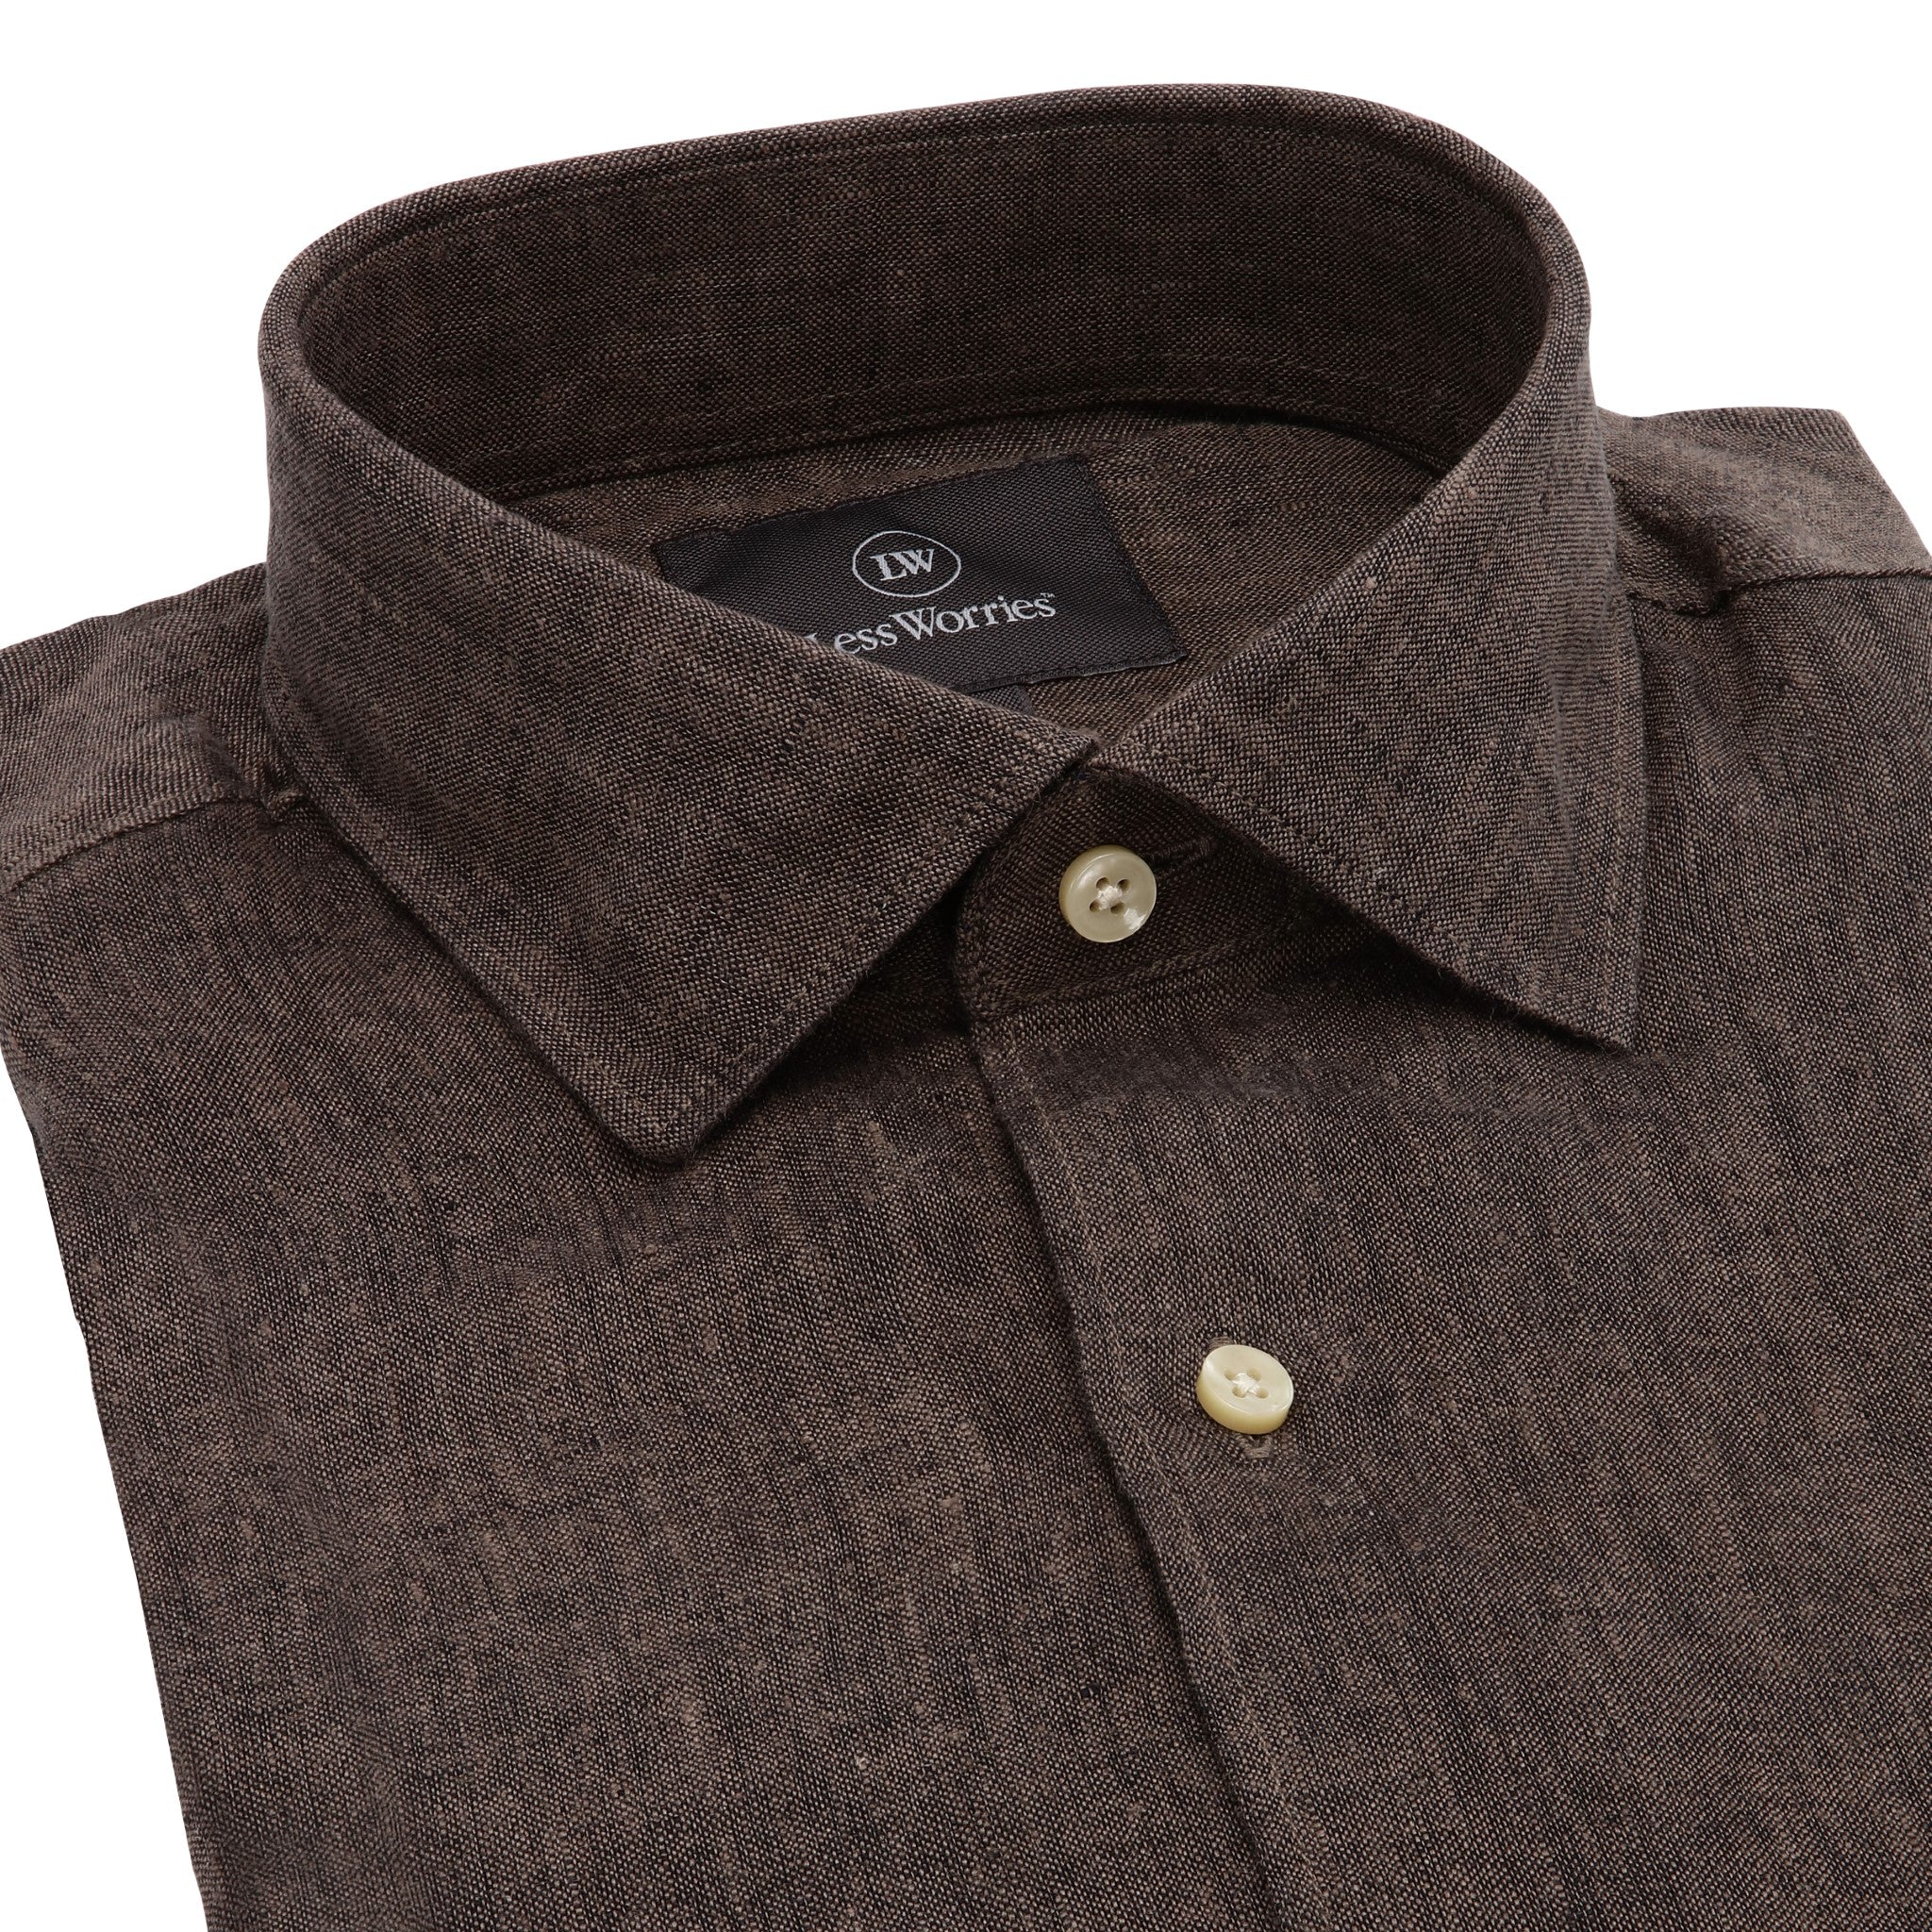 Brown linen shirt with a cutaway collar